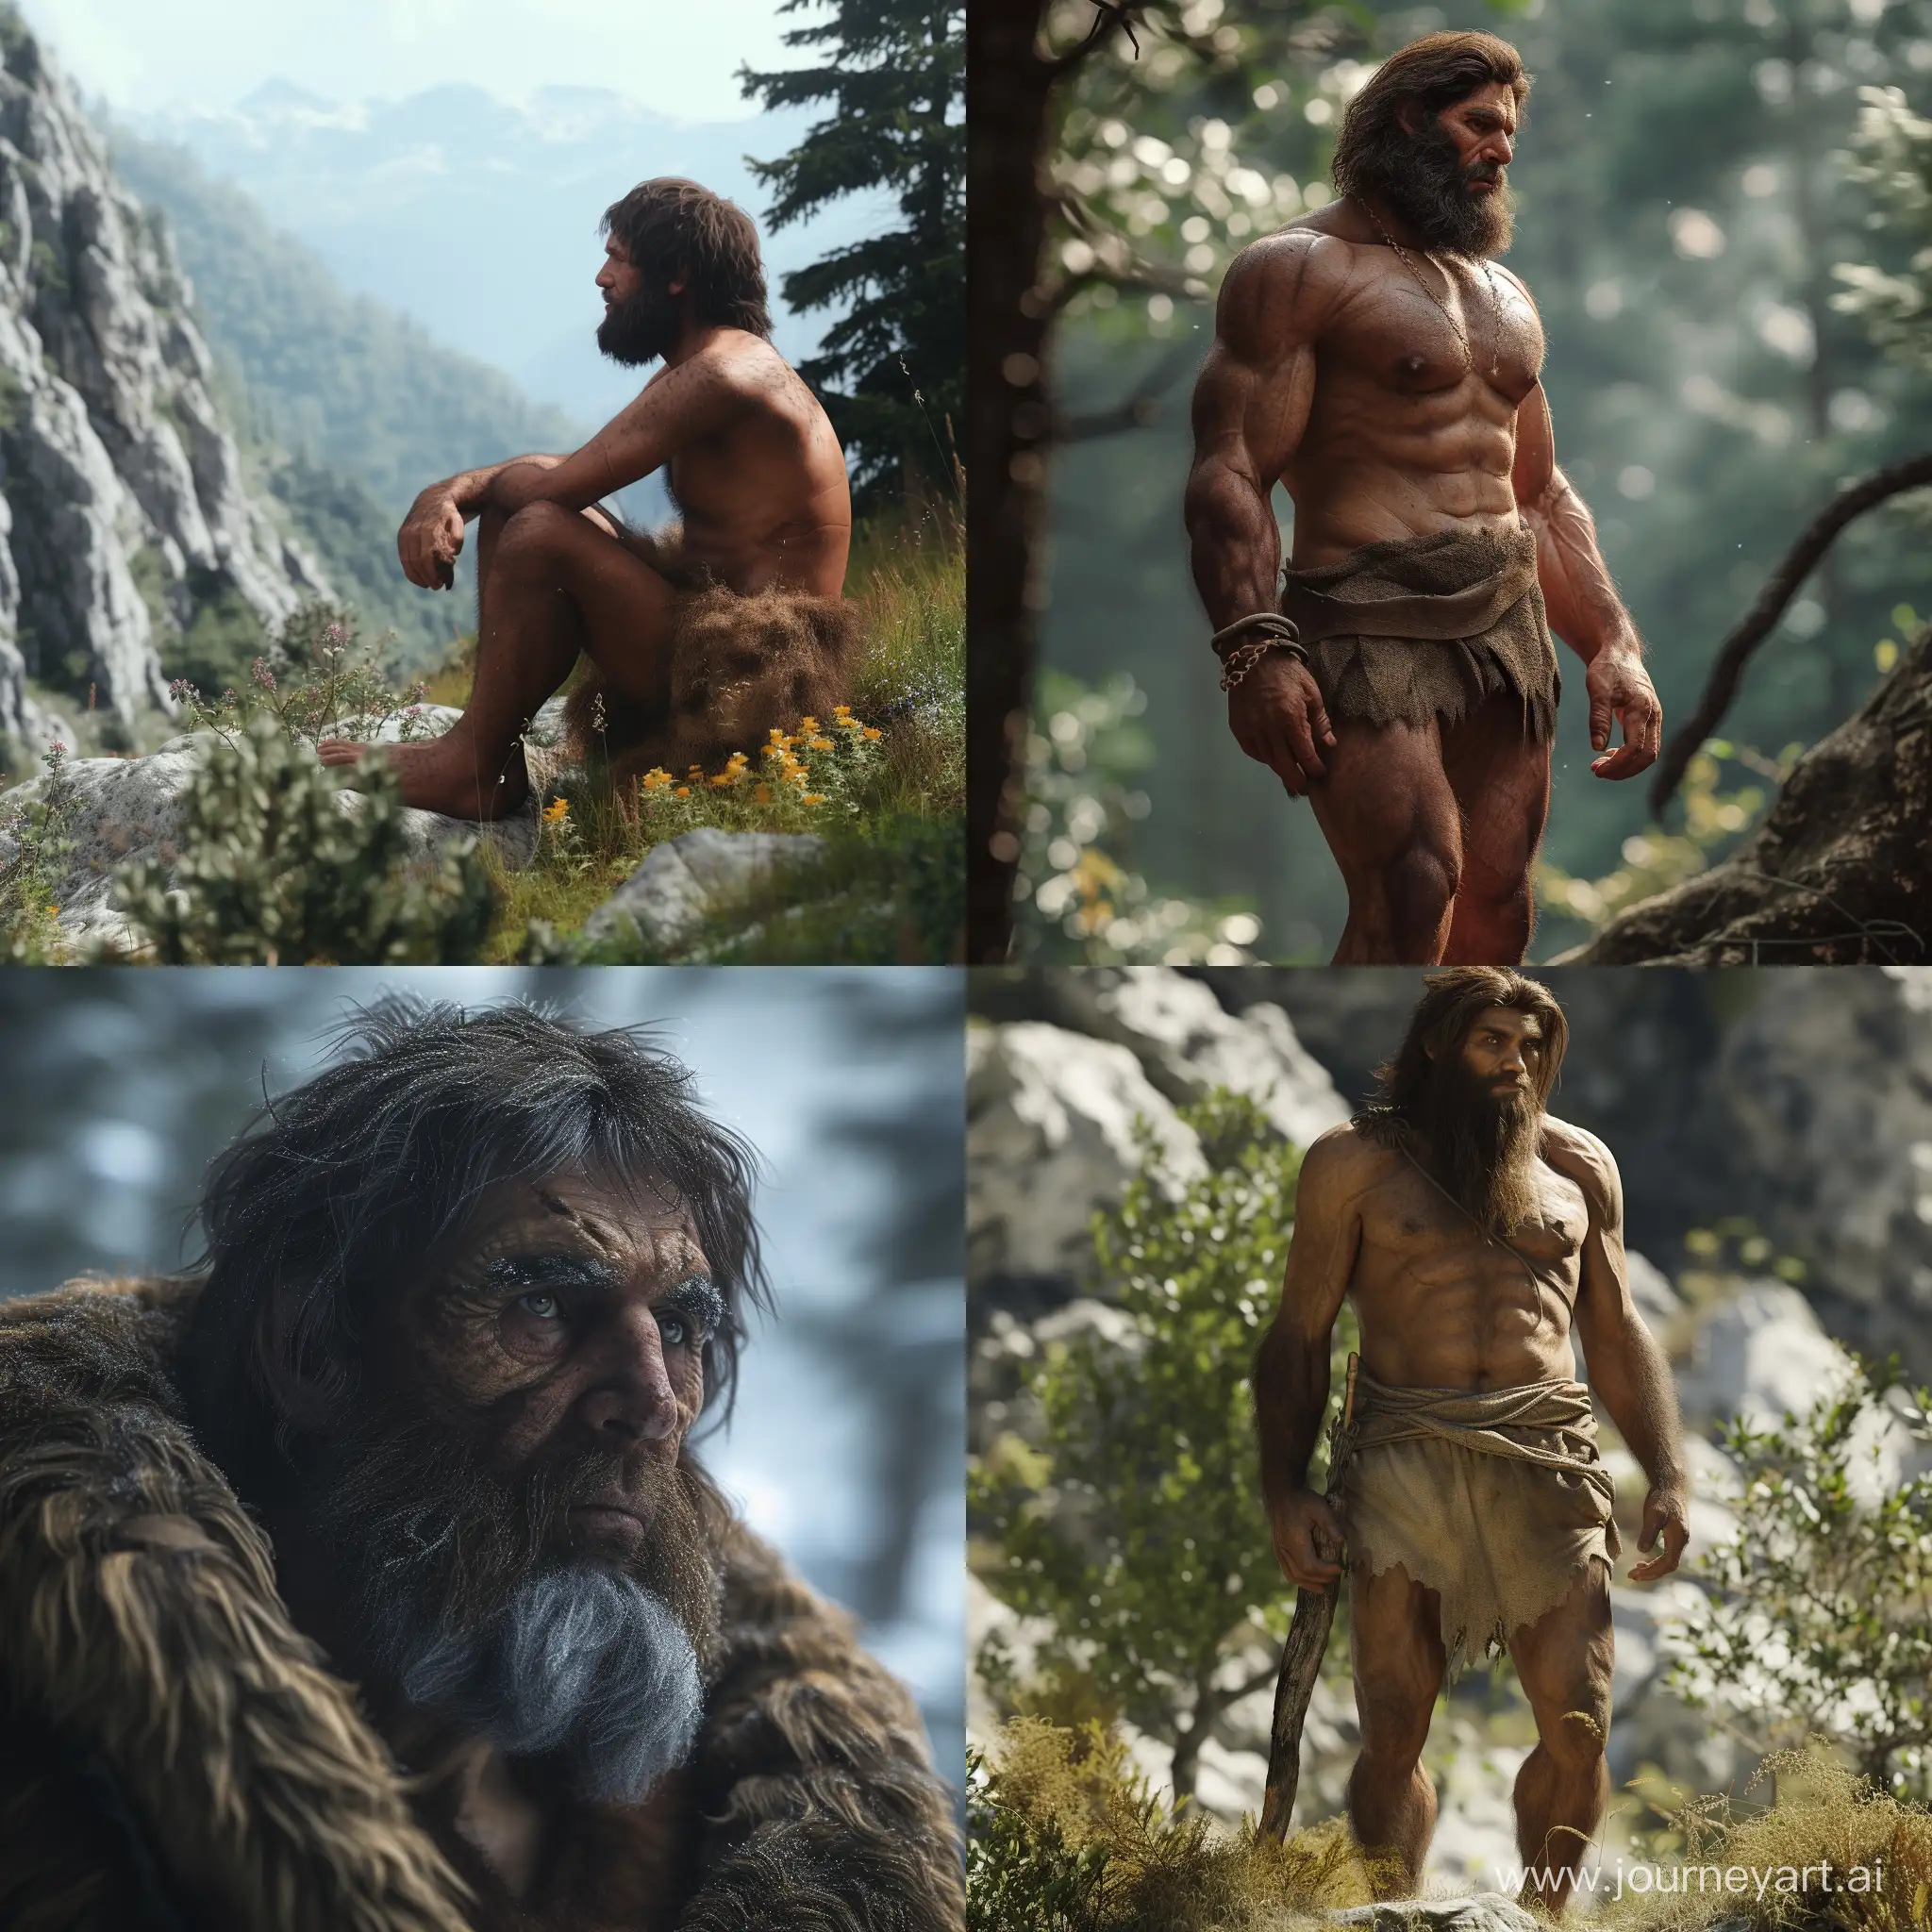 Realistic-Paleo-Balkan-Man-in-Ancient-European-Setting-4K-Image